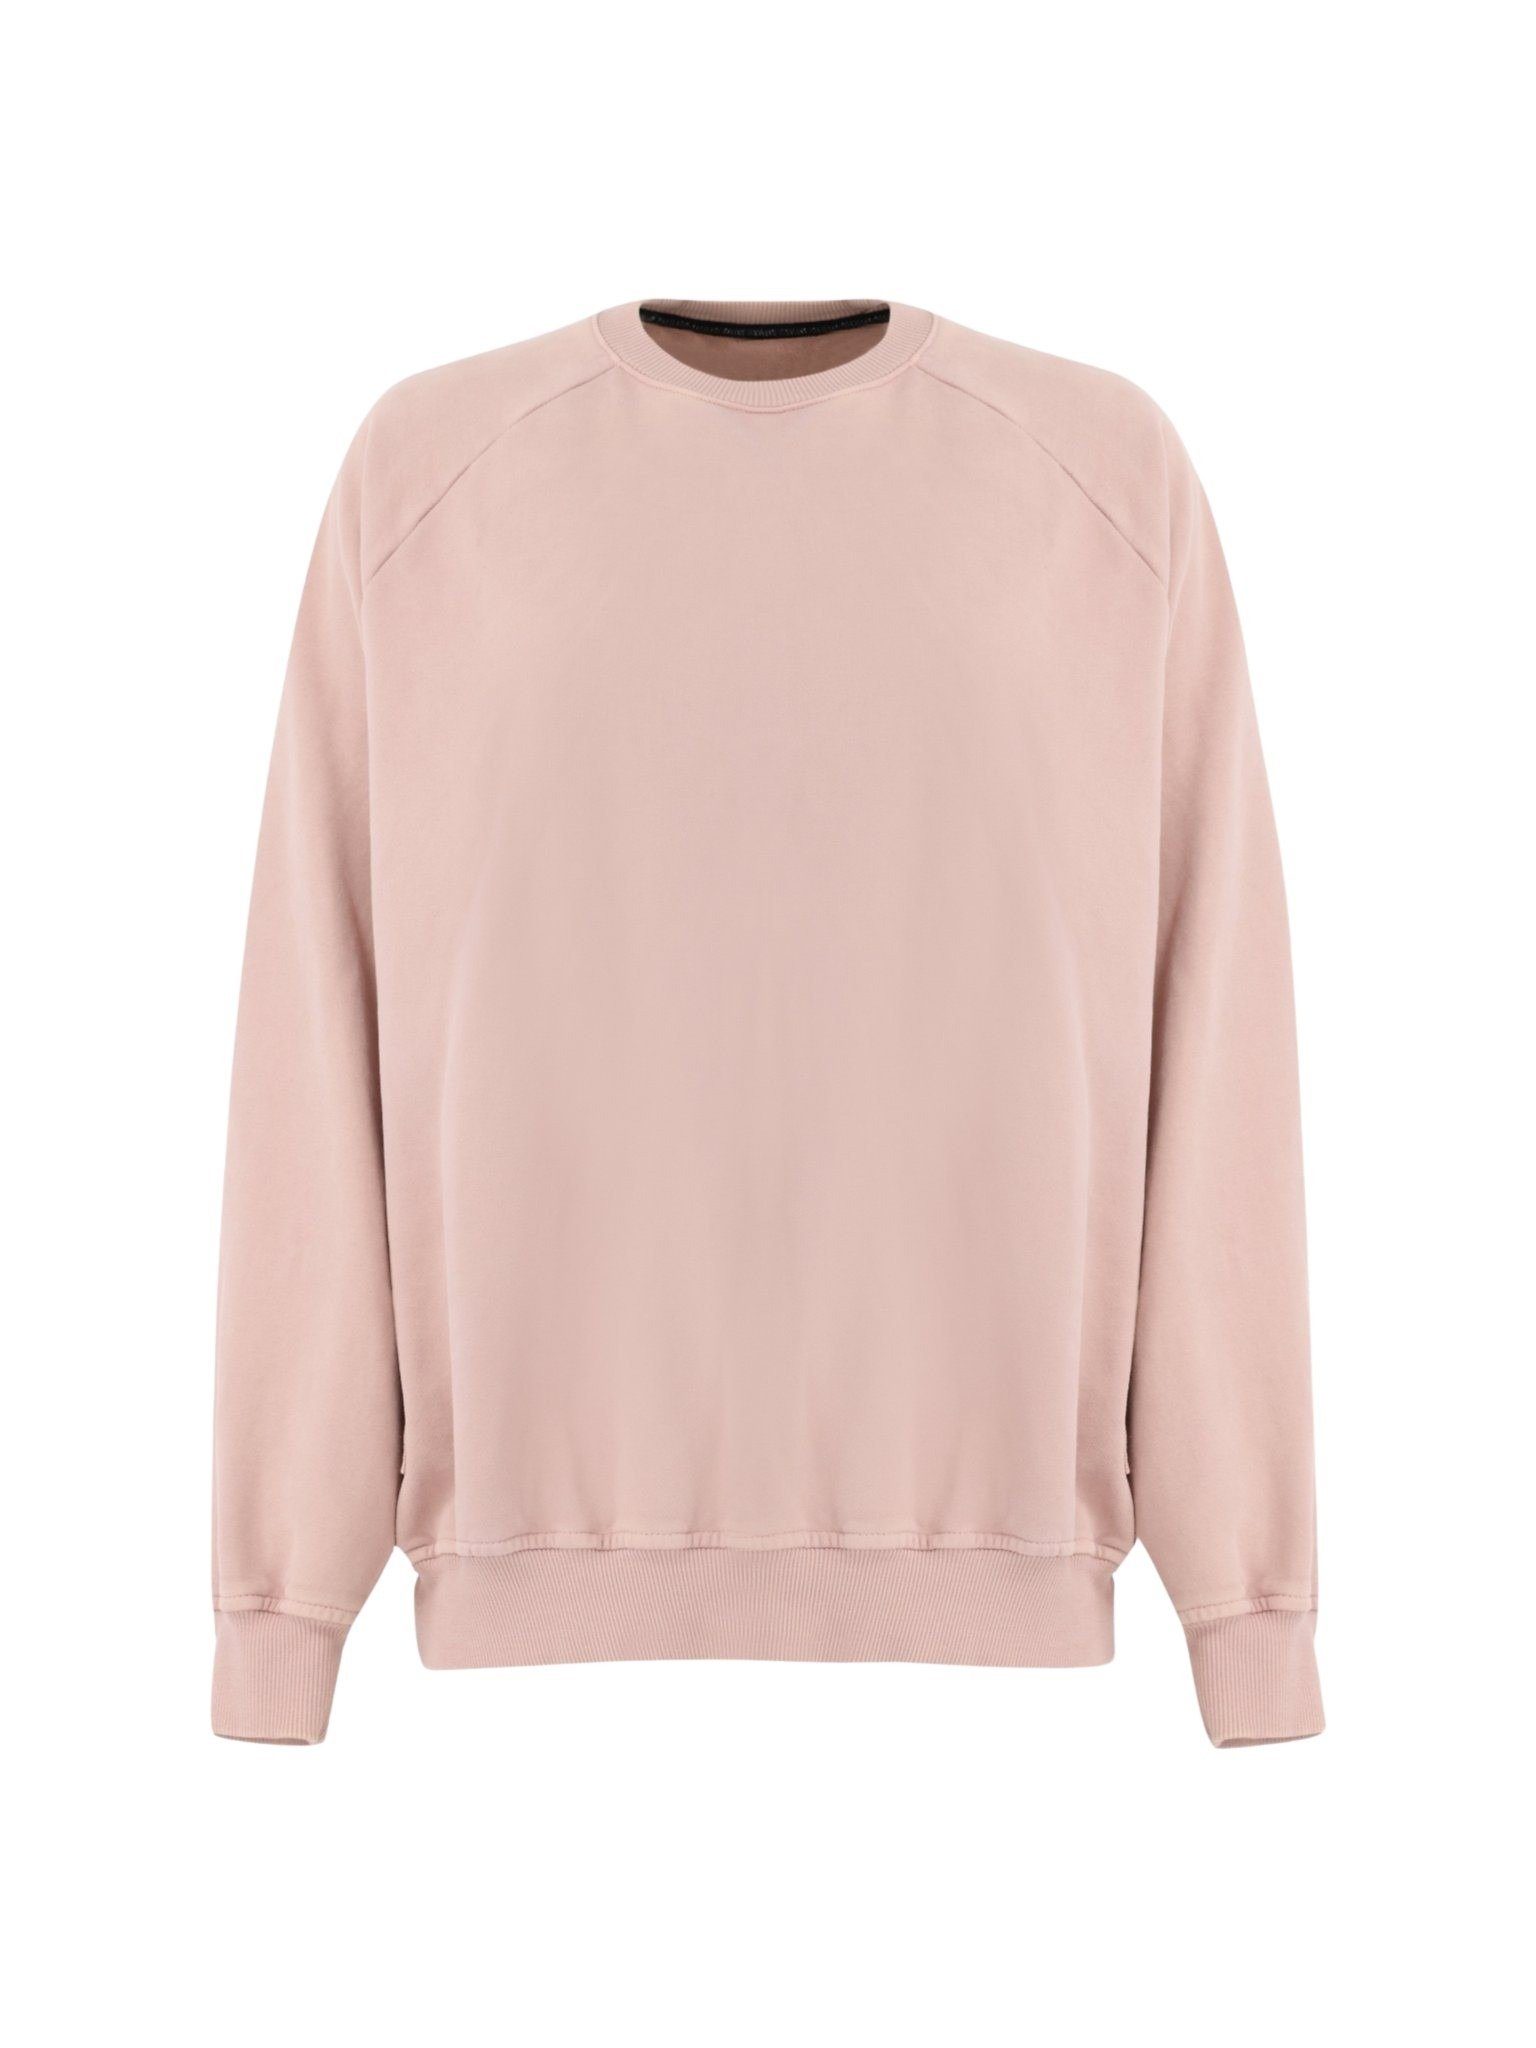 LTB Sweatshirts für Damen | OTTO online kaufen